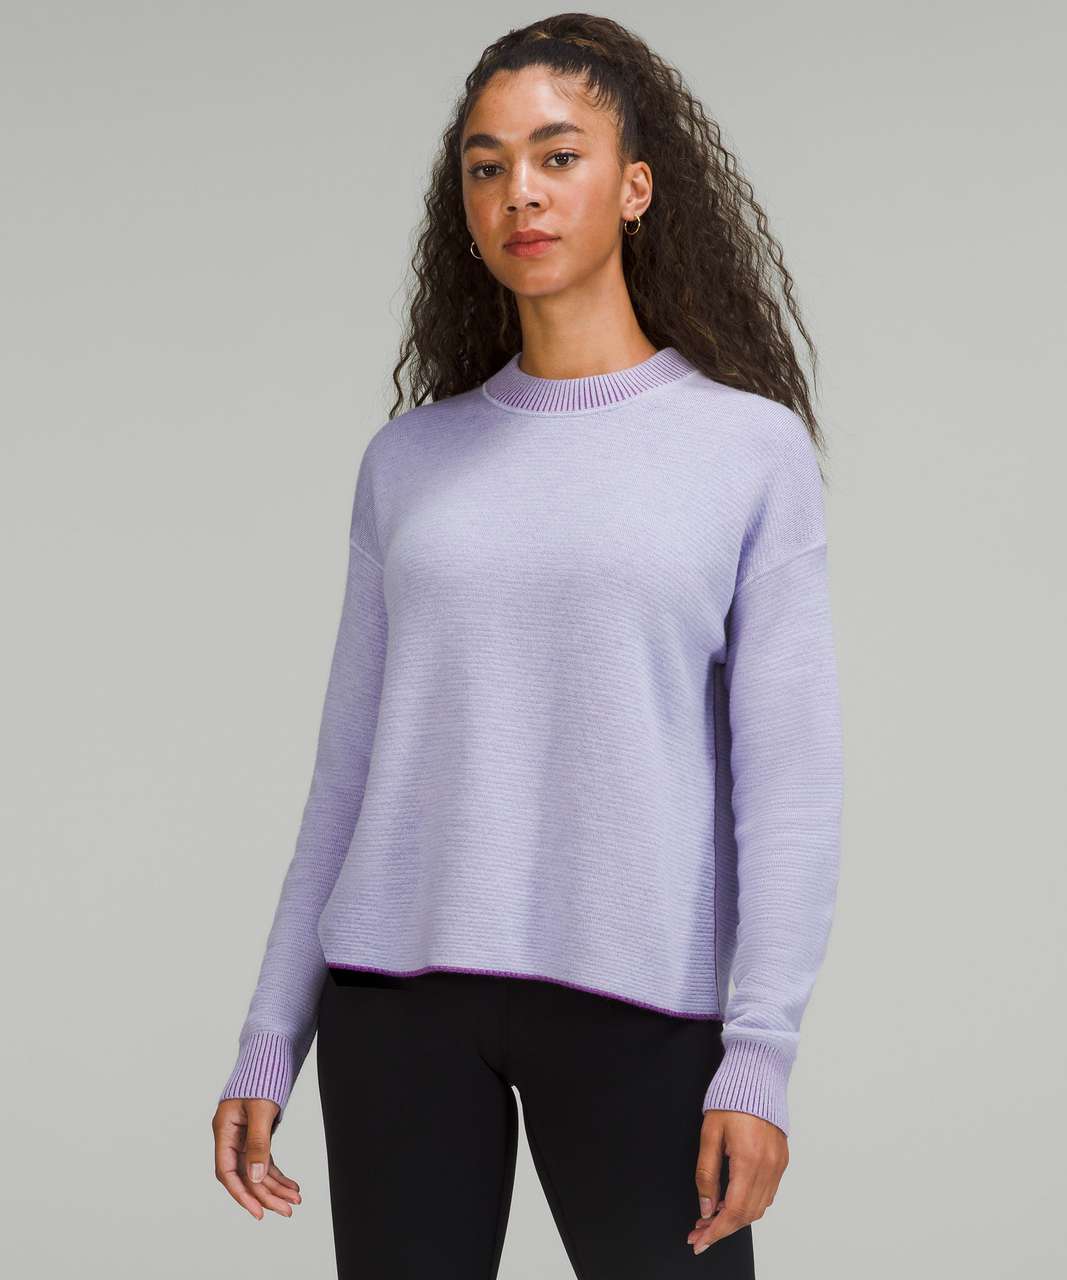 Lululemon Reversible Double-Knit Crew Neck Sweater - Faint Lavender / Moonlit Magenta